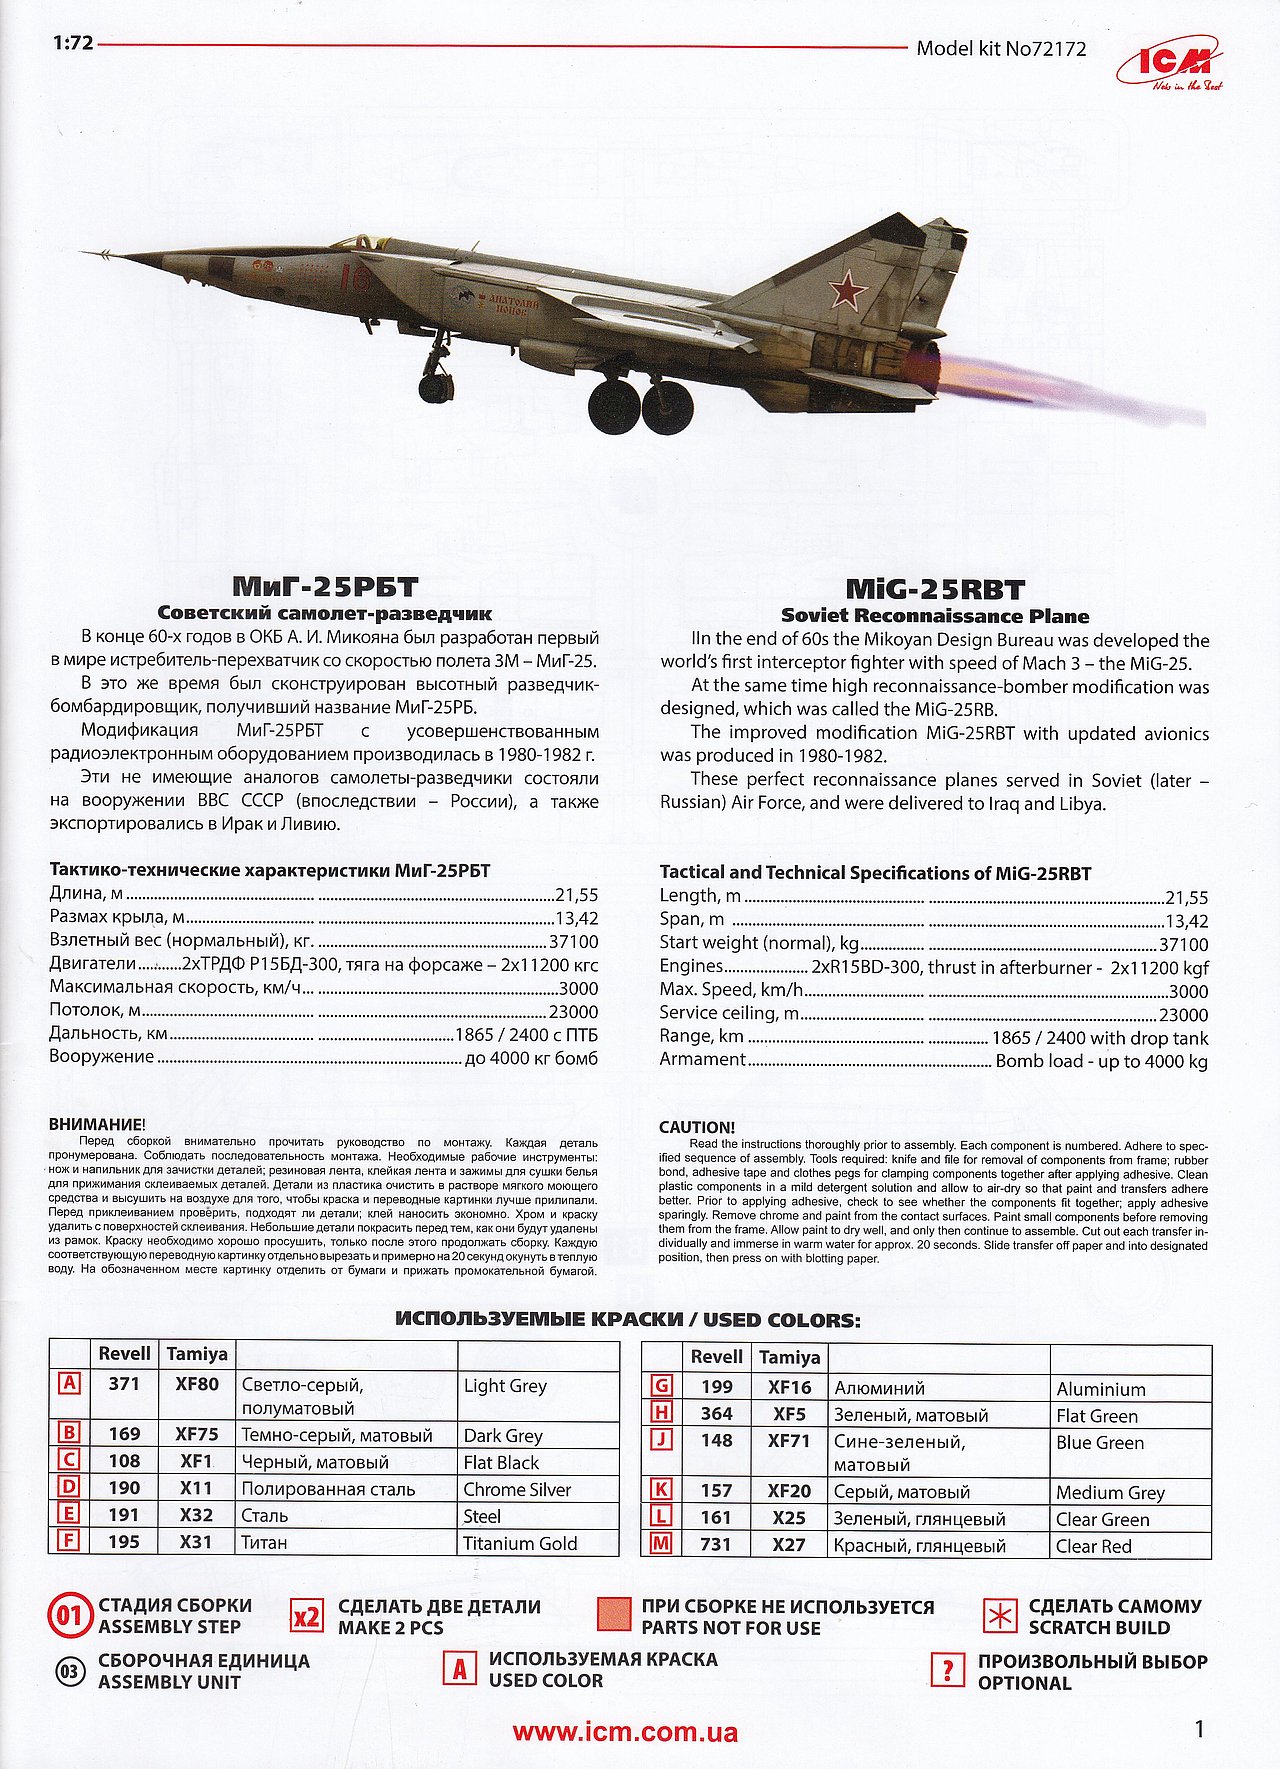 New Ware Mask NWAM0685 1/72 Mikoyan MiG-25BM BASIC ICM 